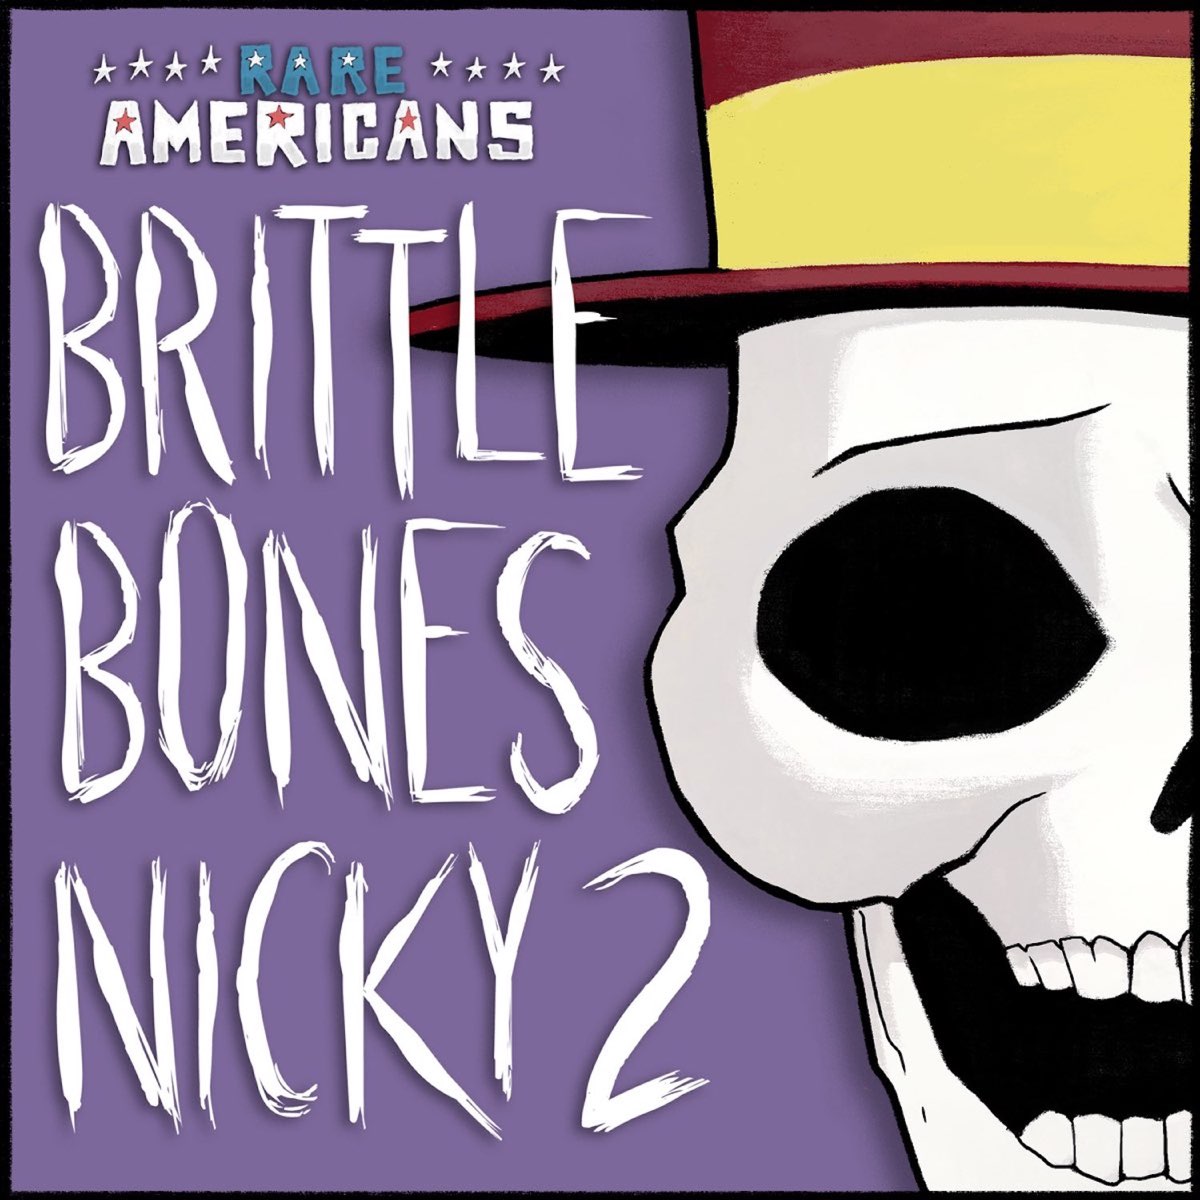 Bones nicky